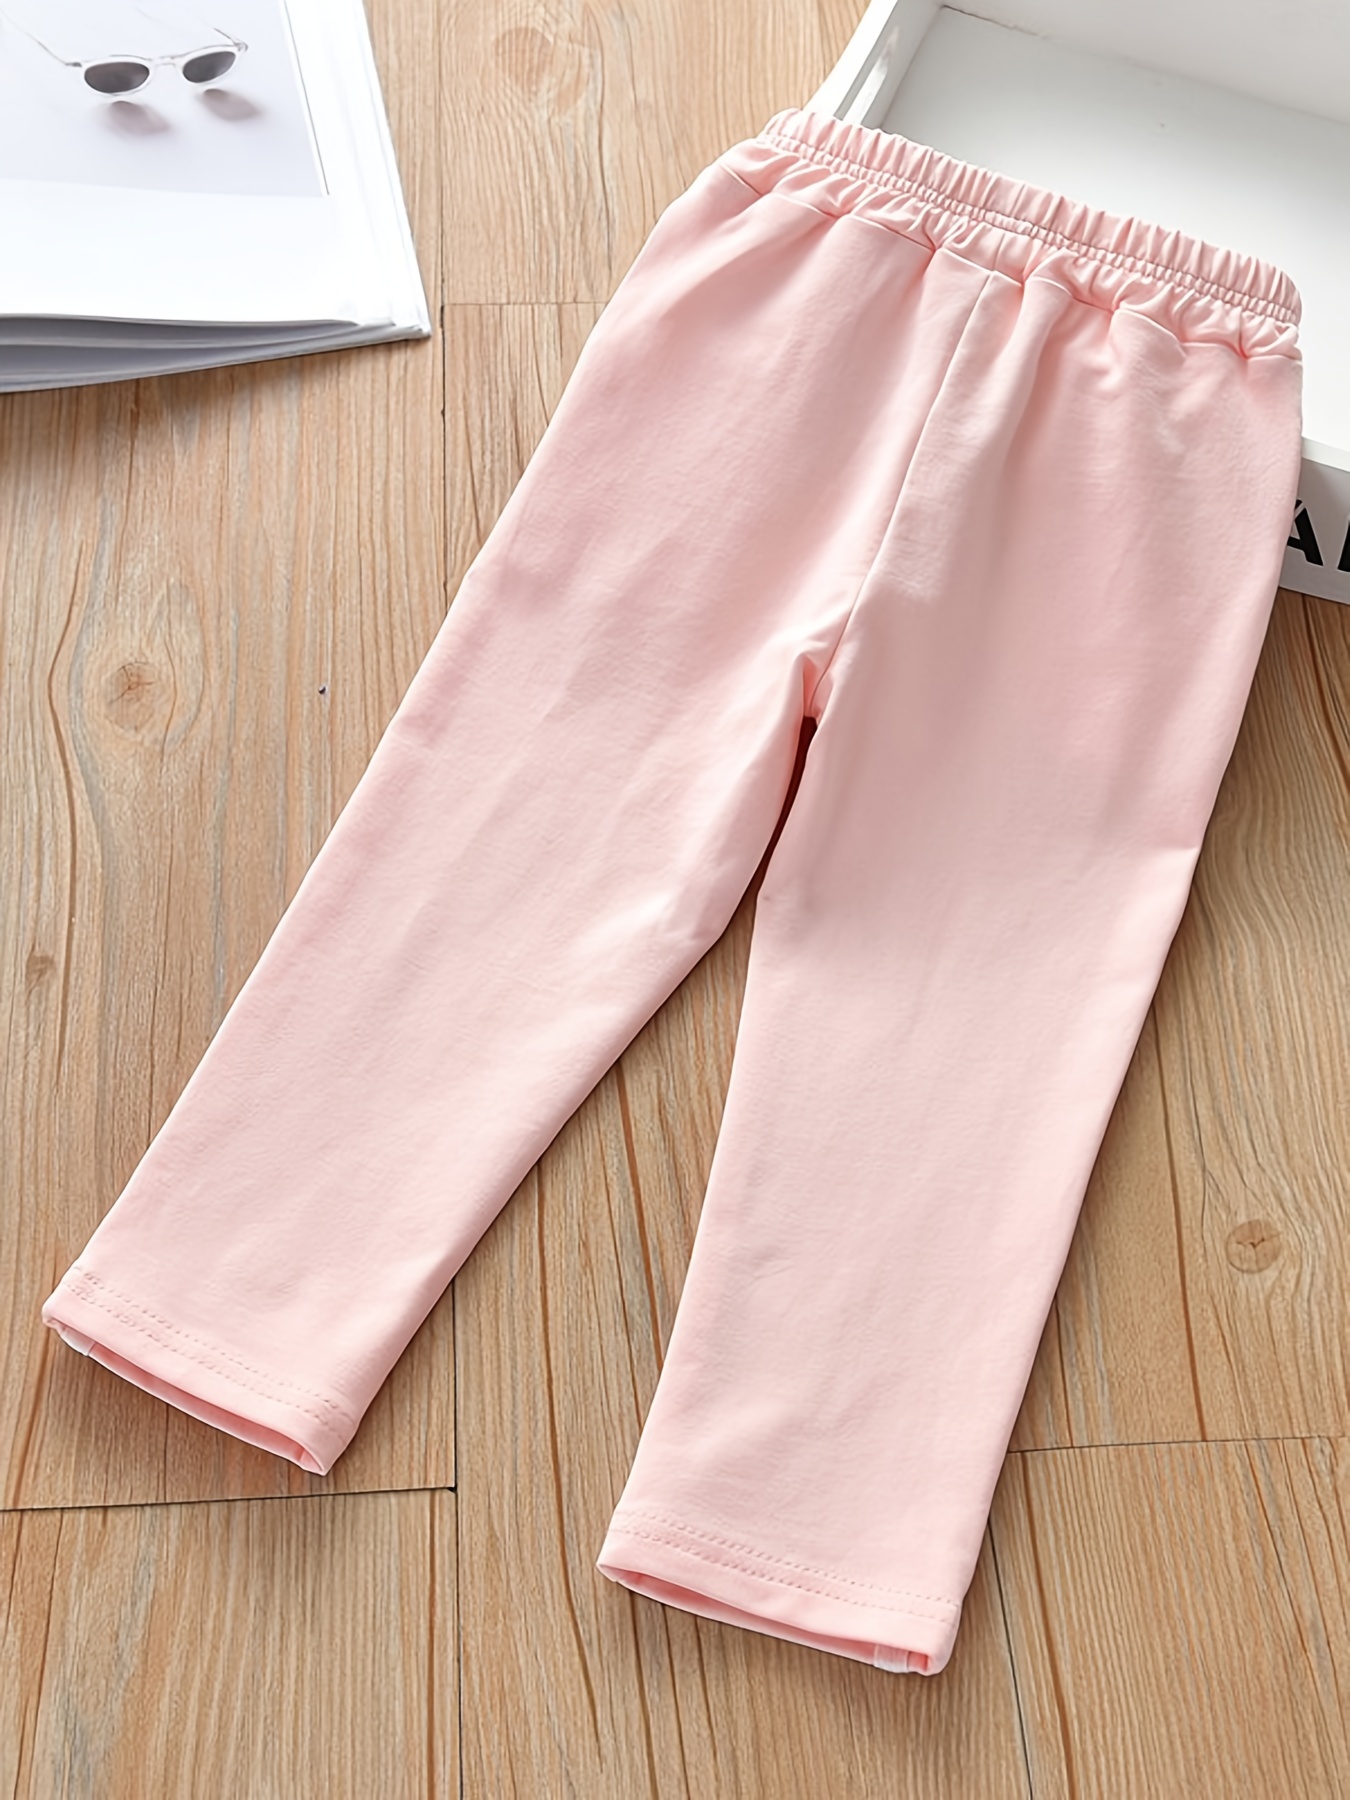 Baby Pink Cotton Leggings